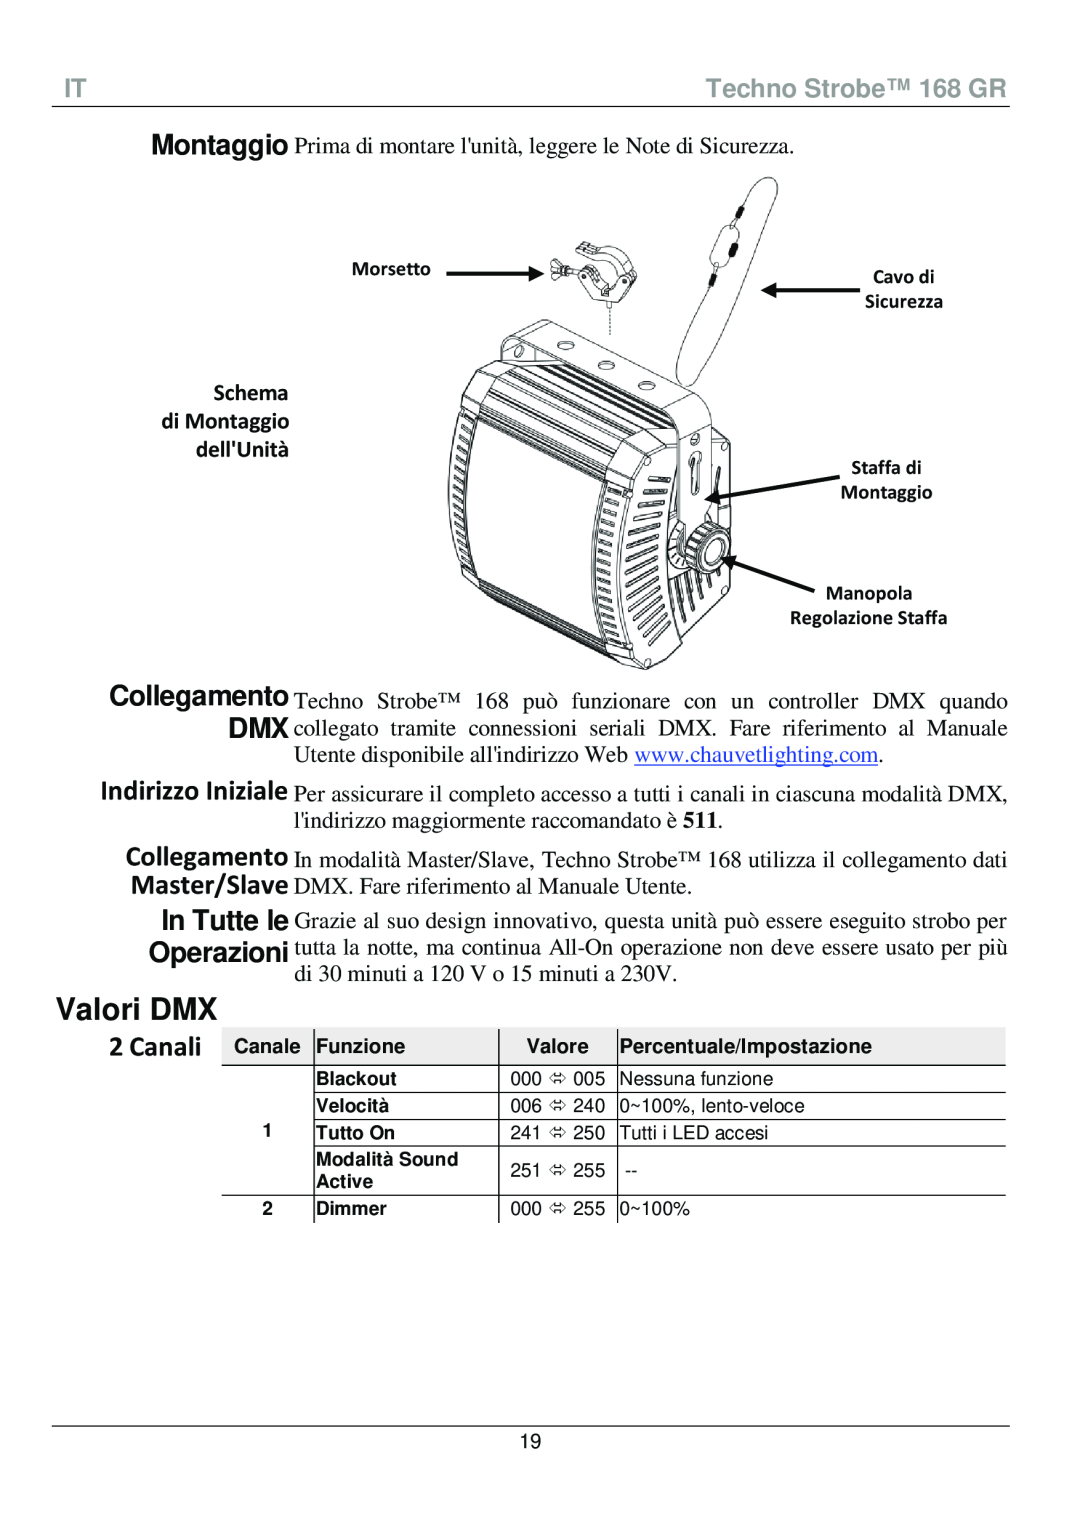 Chauvet manual Valori DMX, Canali, Schema di Montaggio dellUnità, Techno Strobe 168 GR 